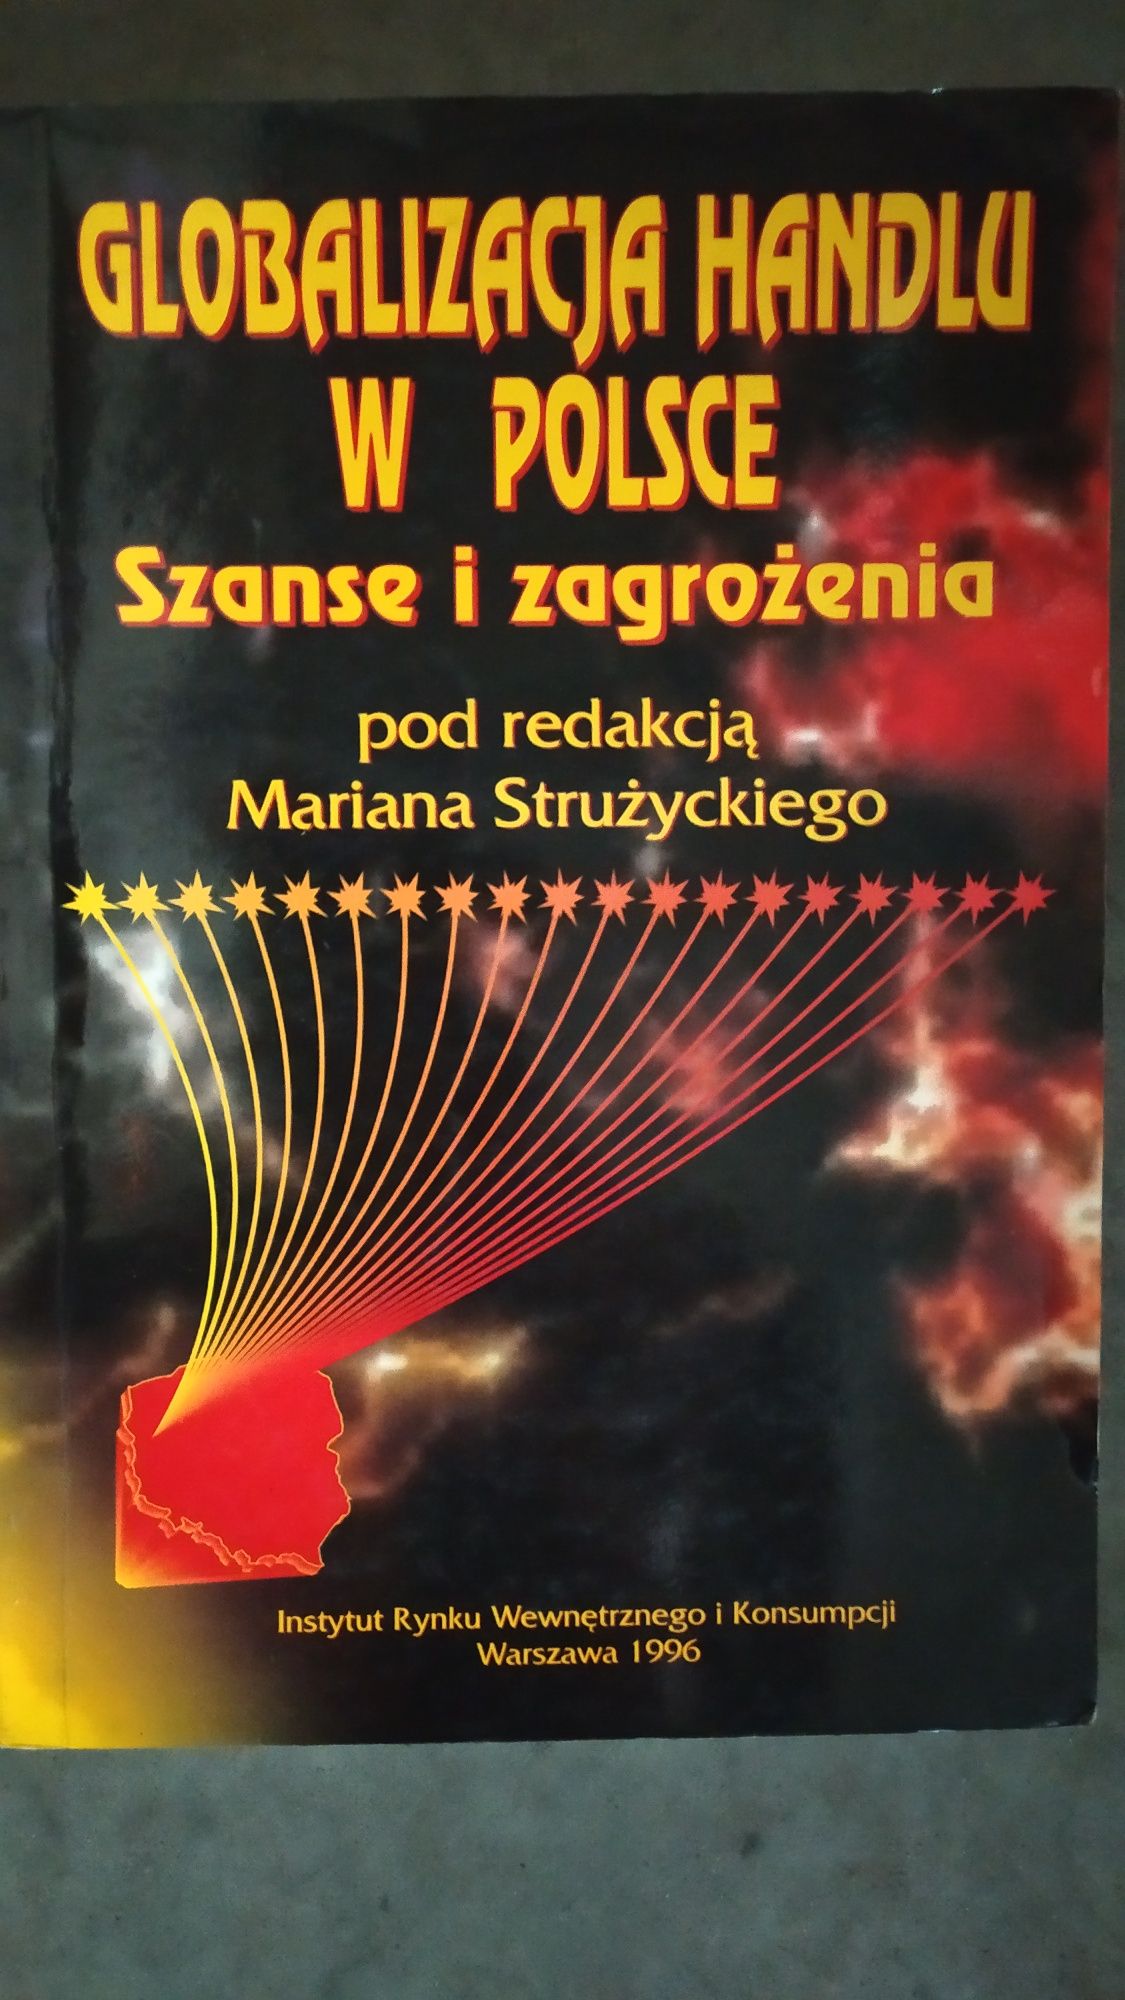 Globalizacja handlu w Polsce Marian Strużycki